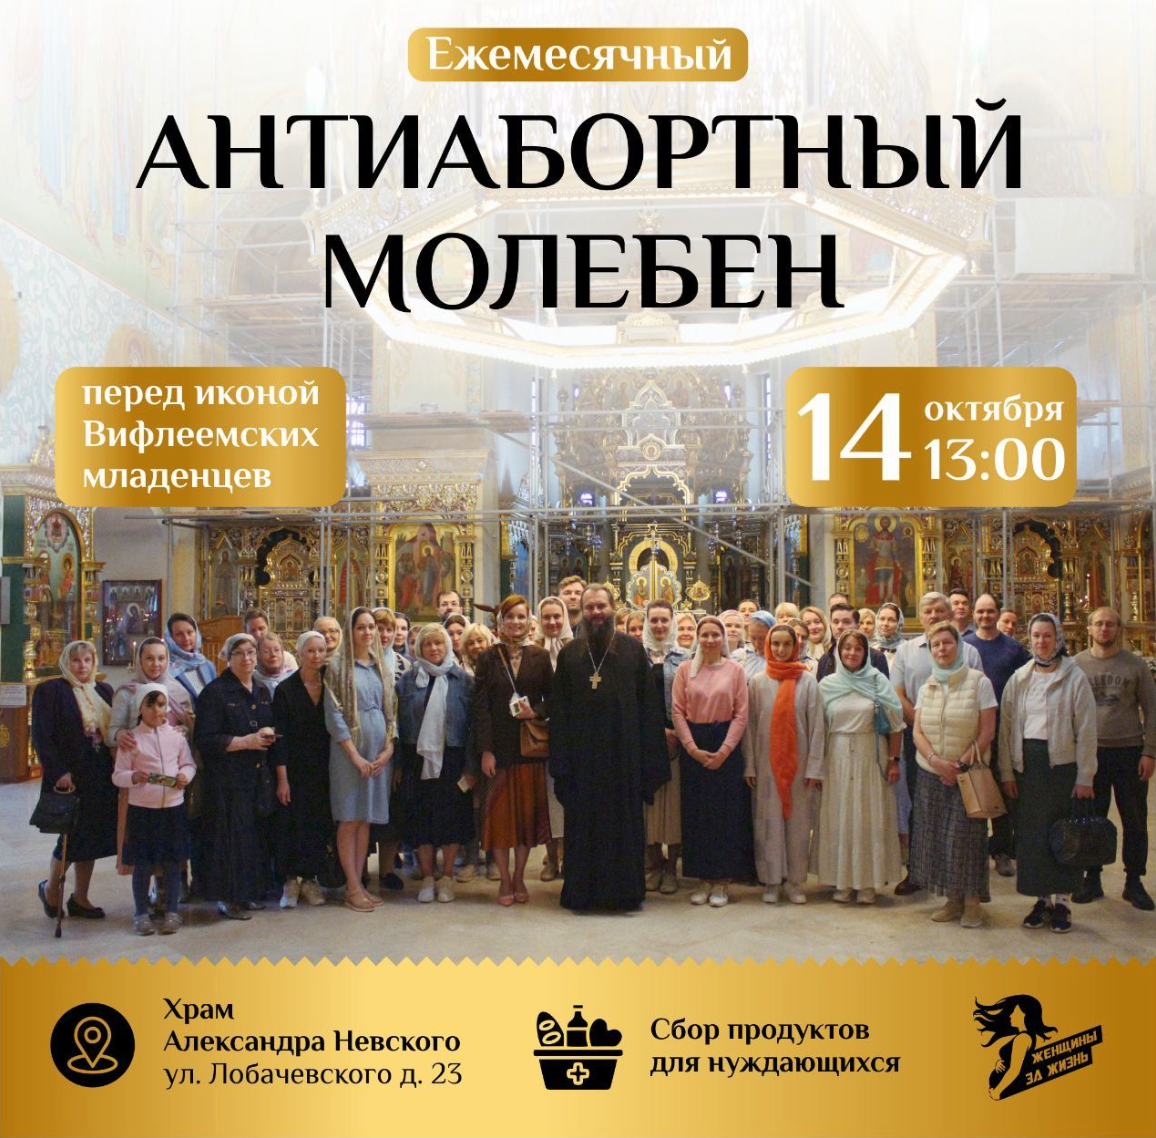 Varje vecka organiserar rysk-ortodoxa kyrkan en anti-abortgudstjänst tillsammans med organisationen Kvinnor för livet.